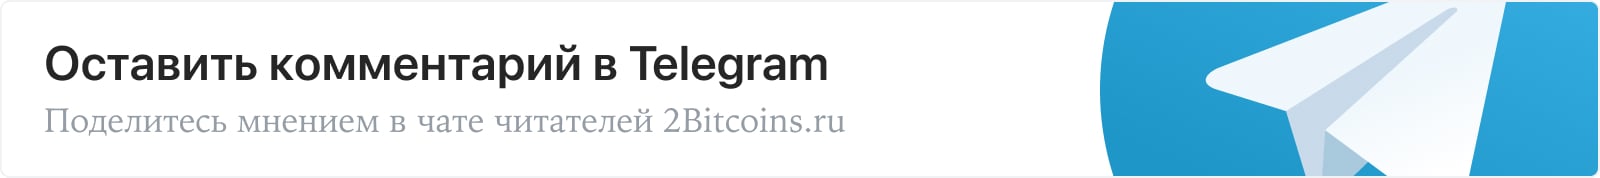 Оставить комментарий в Telegram. Поделитесь мнением в чате читателей 2Bitcoins.ru